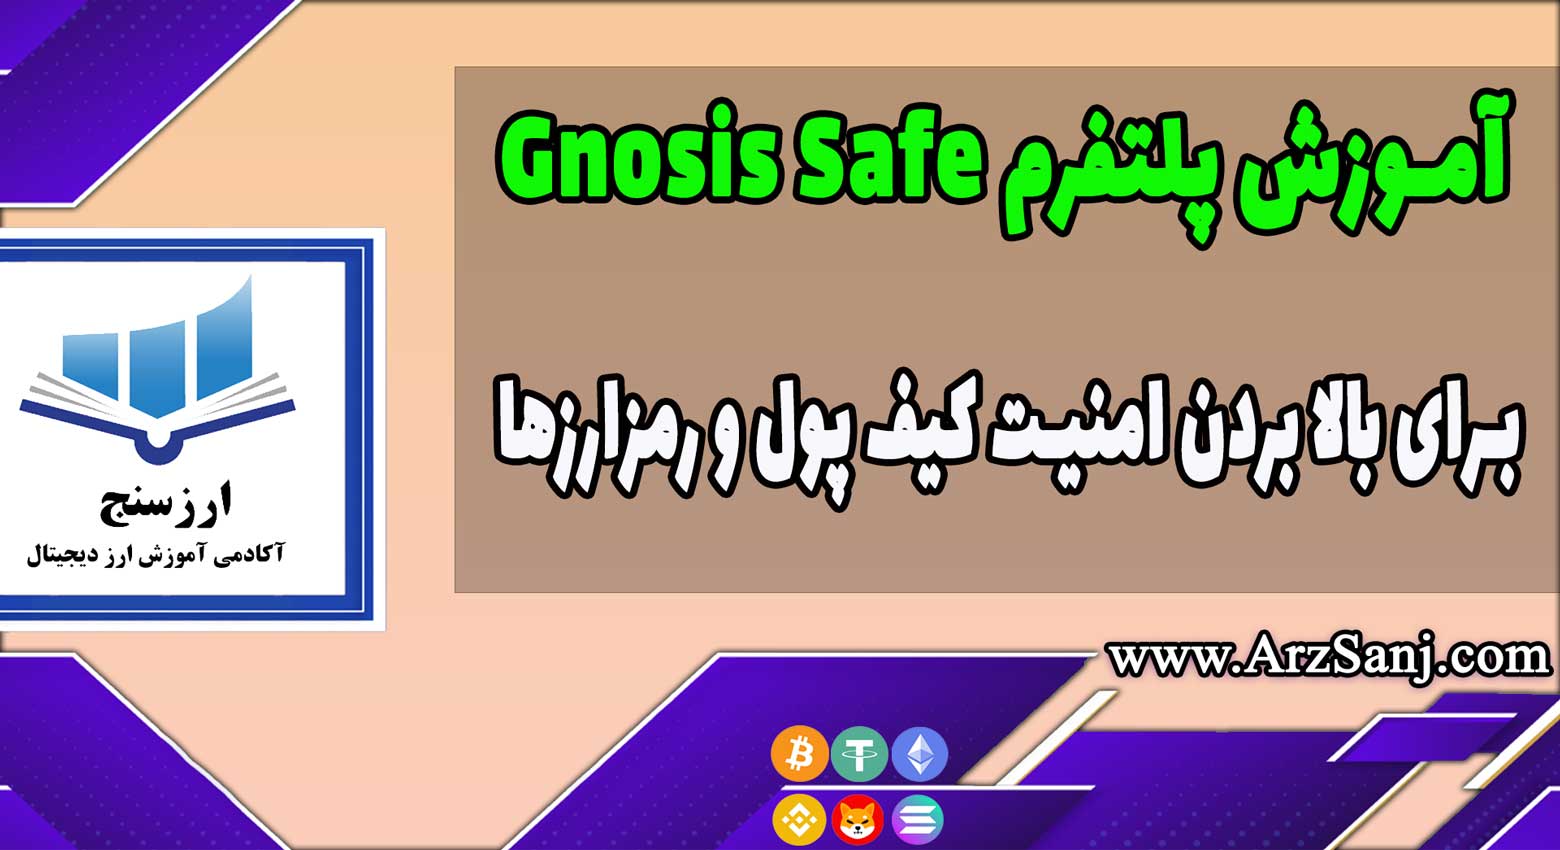 آموزش پلتفرم Gnosis Safe با ویدیو